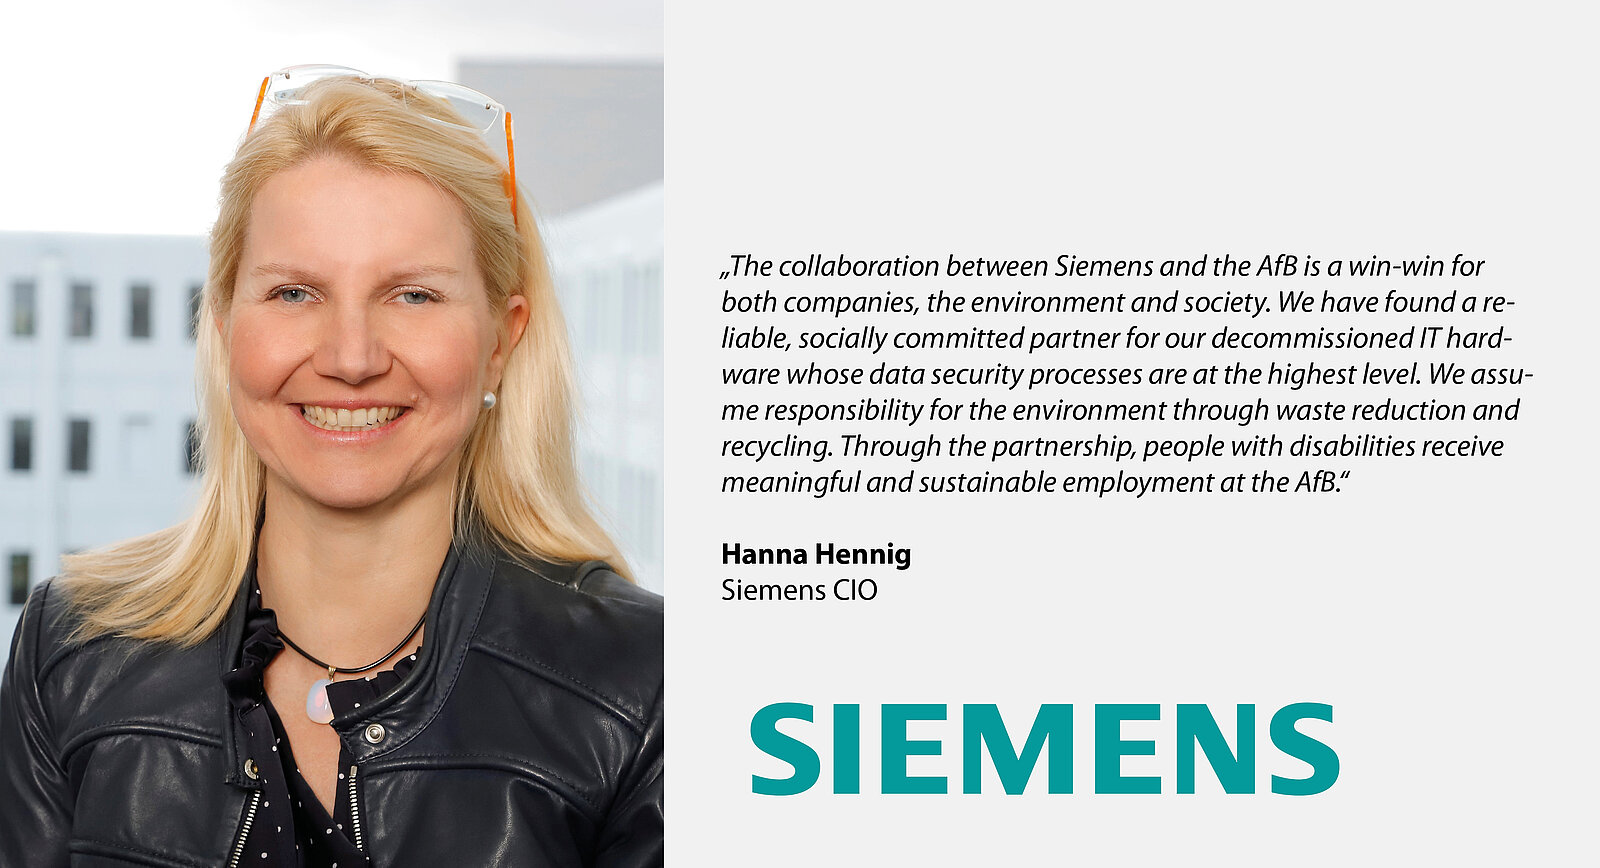 Referenz und Foto von Hanna Hennig, CIO bei Siemens